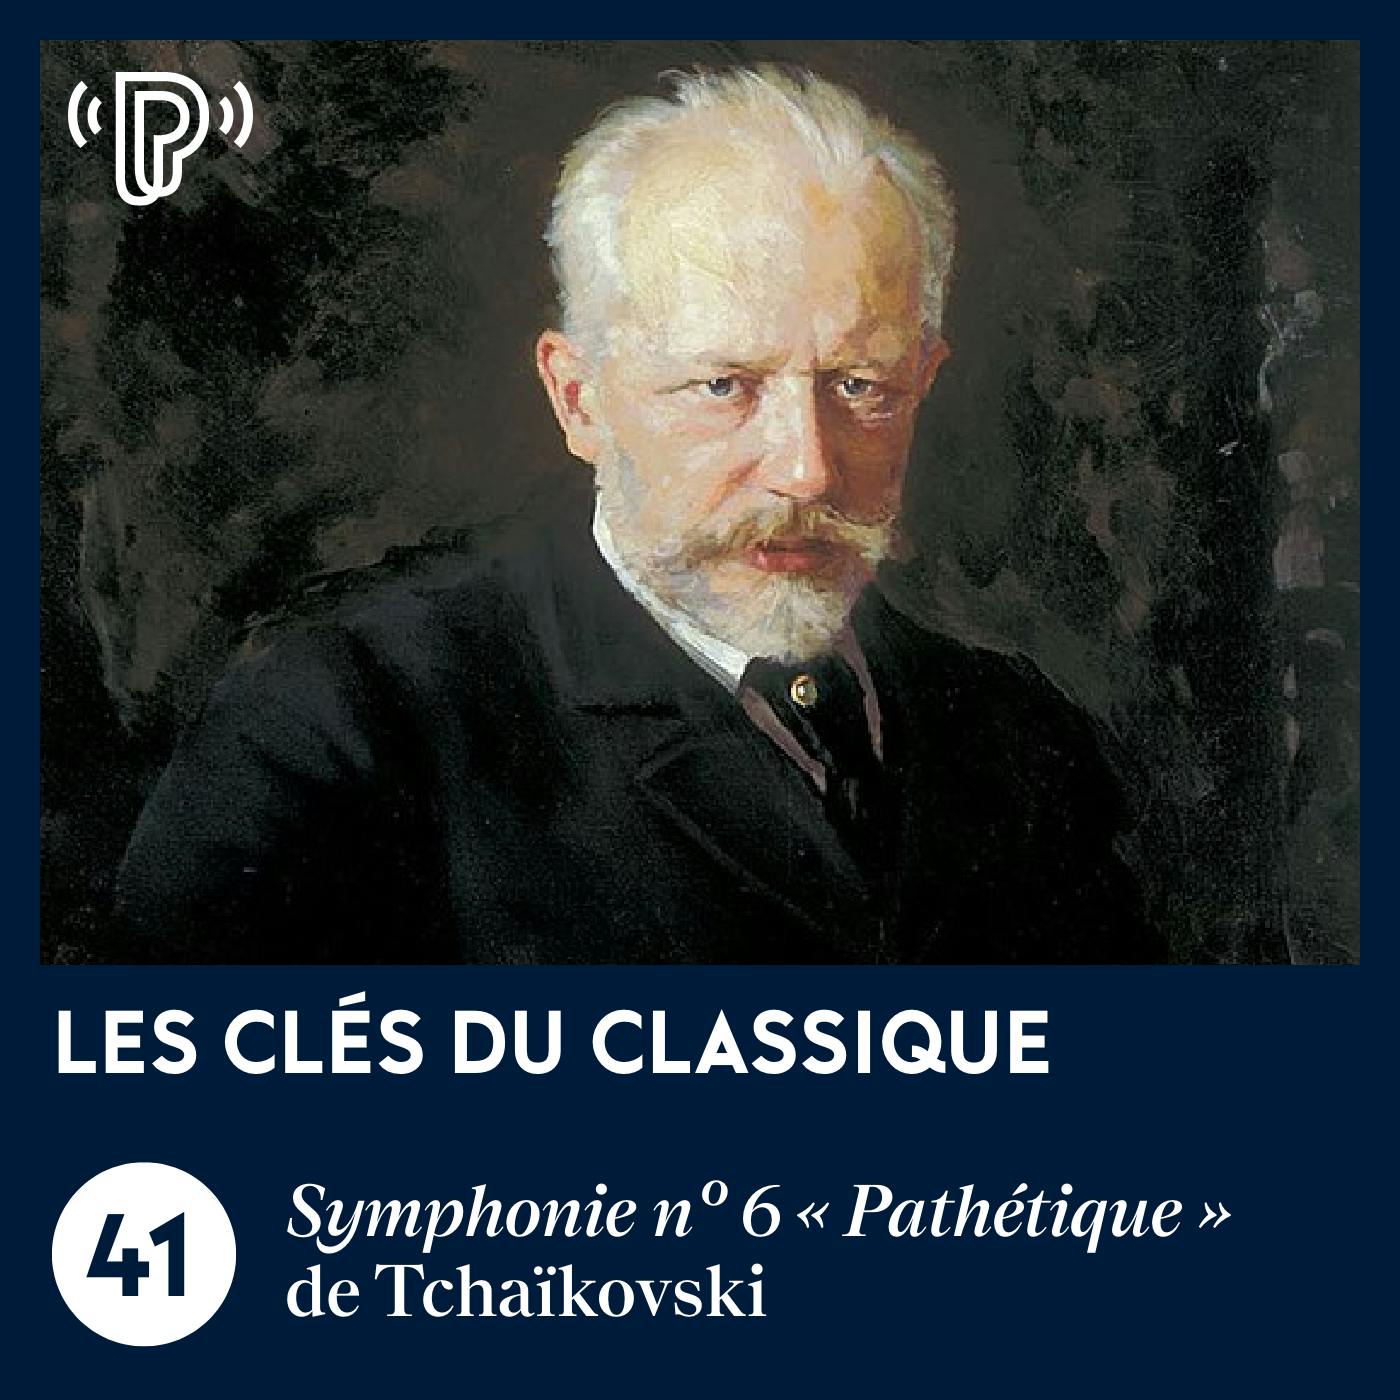 La Symphonie n° 6 « Pathétique » de Tchaïkovski | Les Clés du classique #41